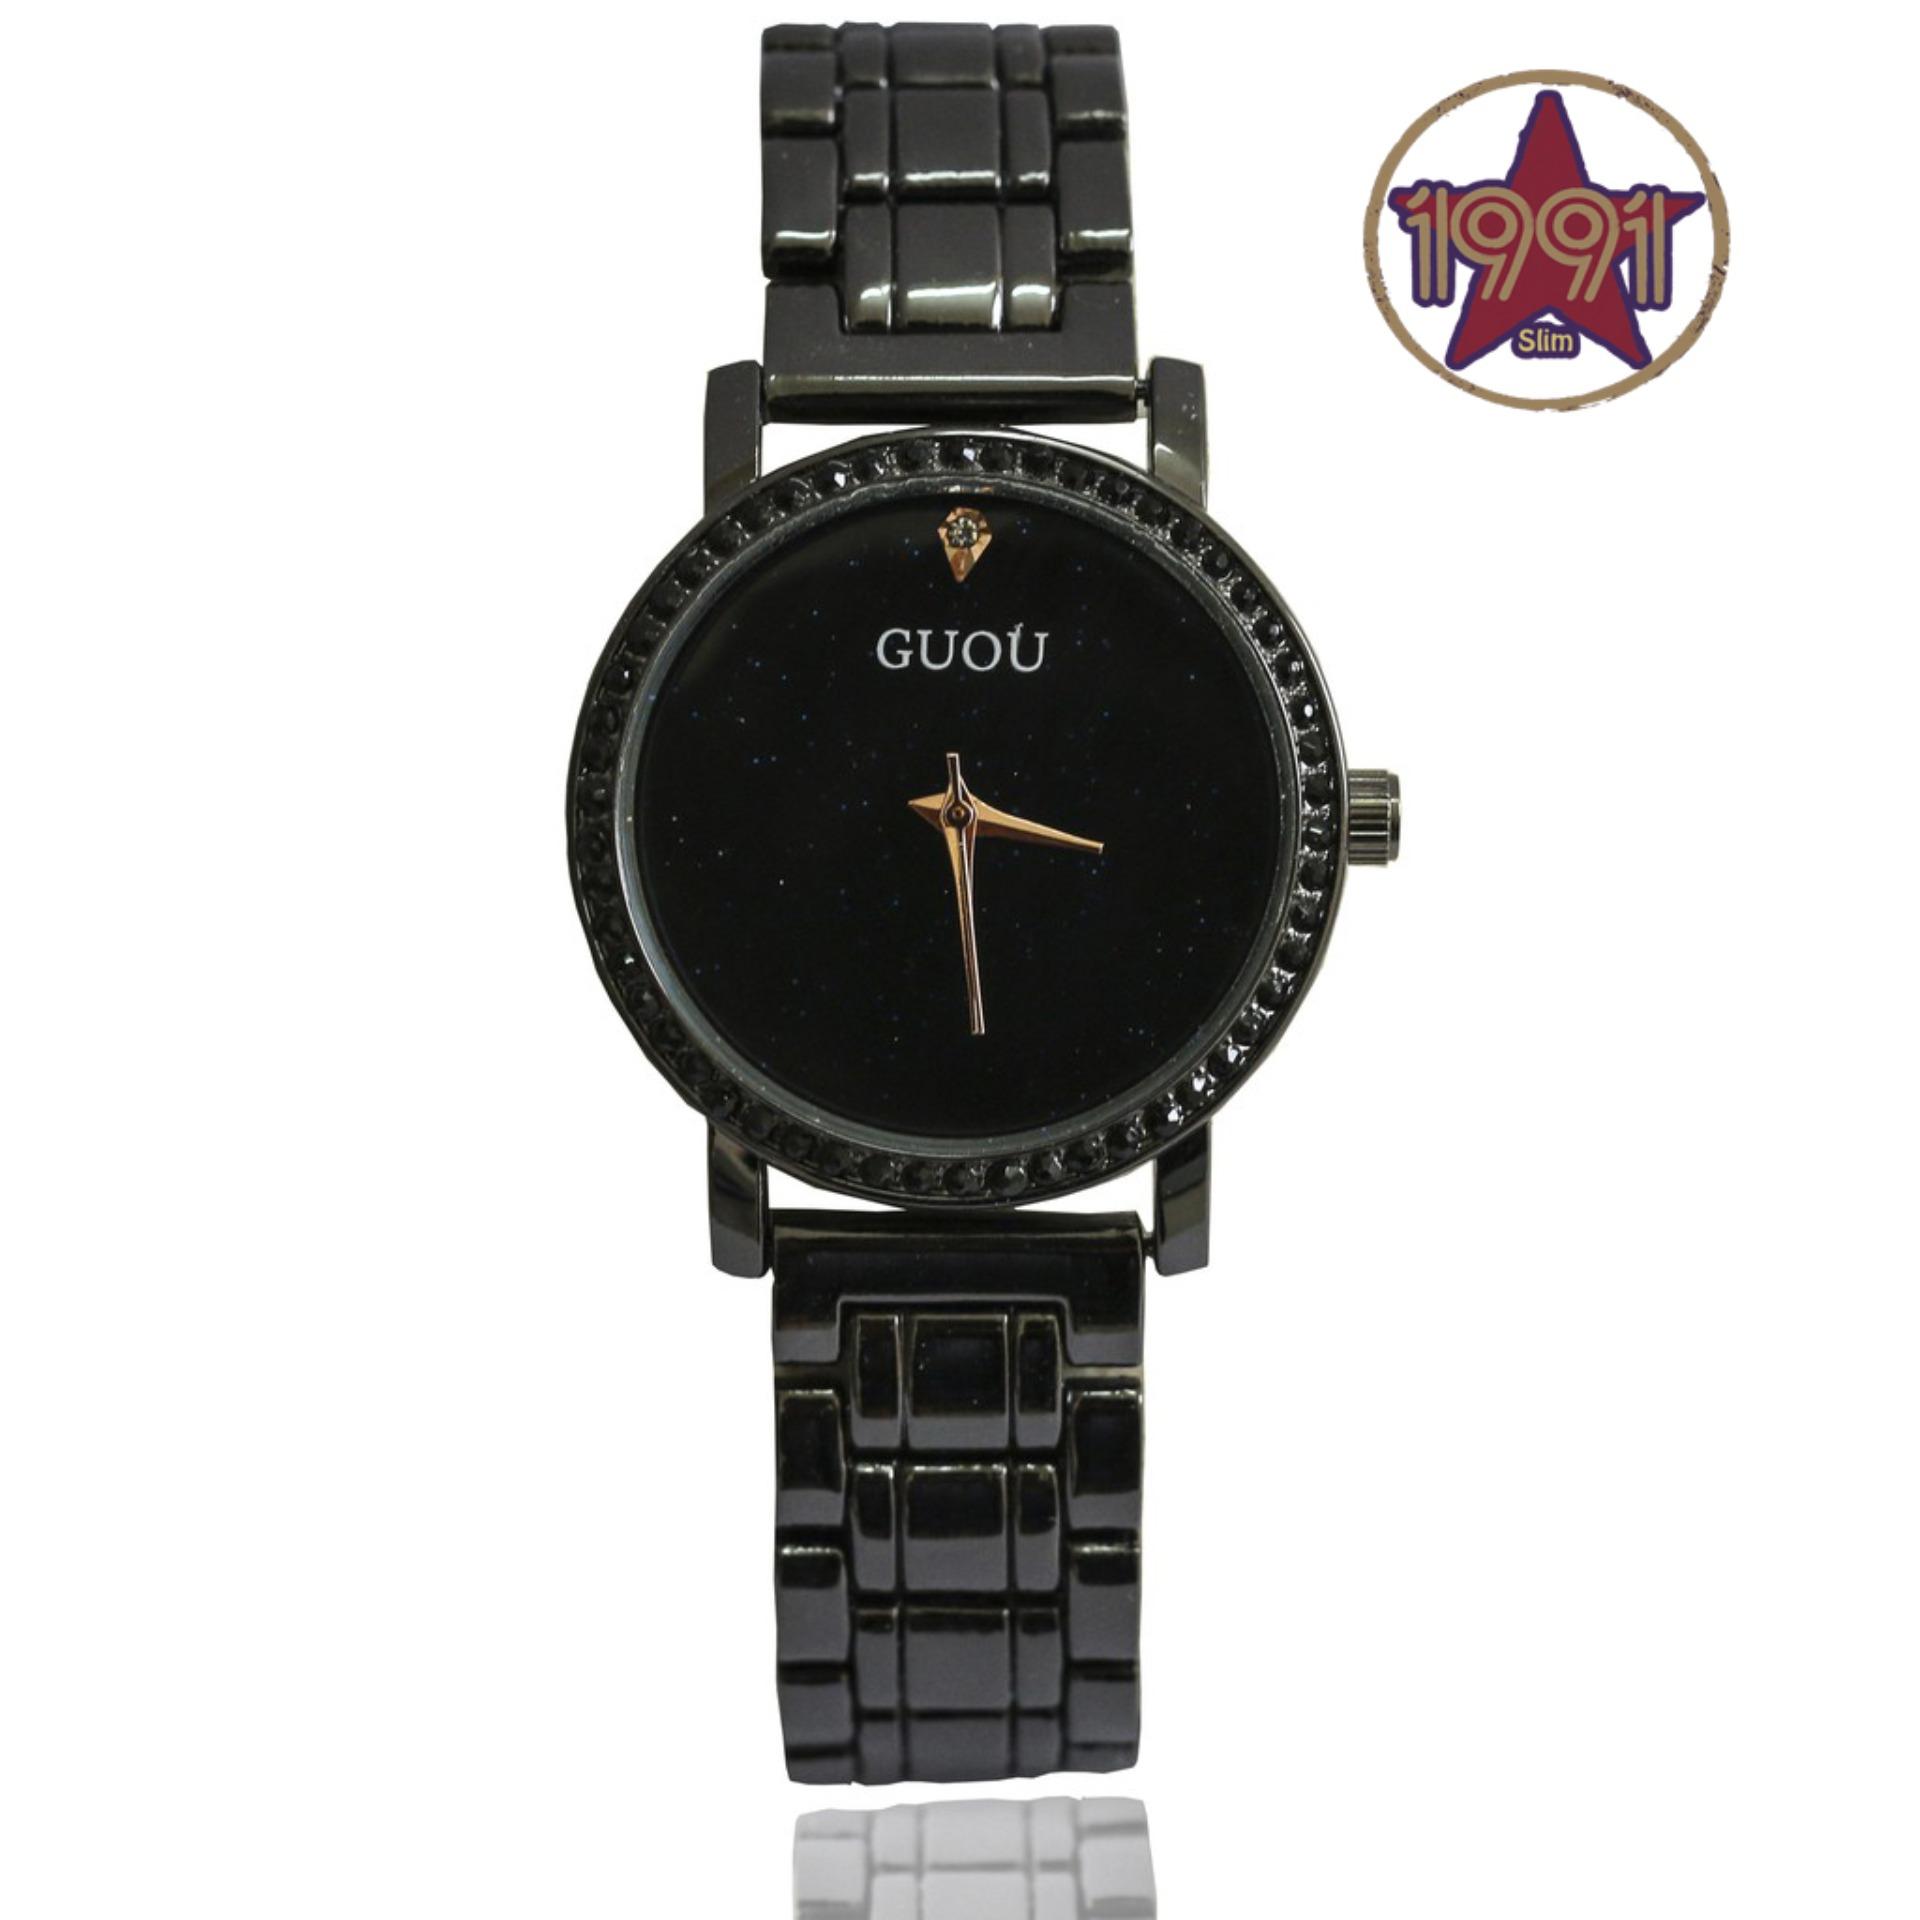 Đồng hồ nữ Guou GU871 đính đá thời trang - Dây đen mặt đen